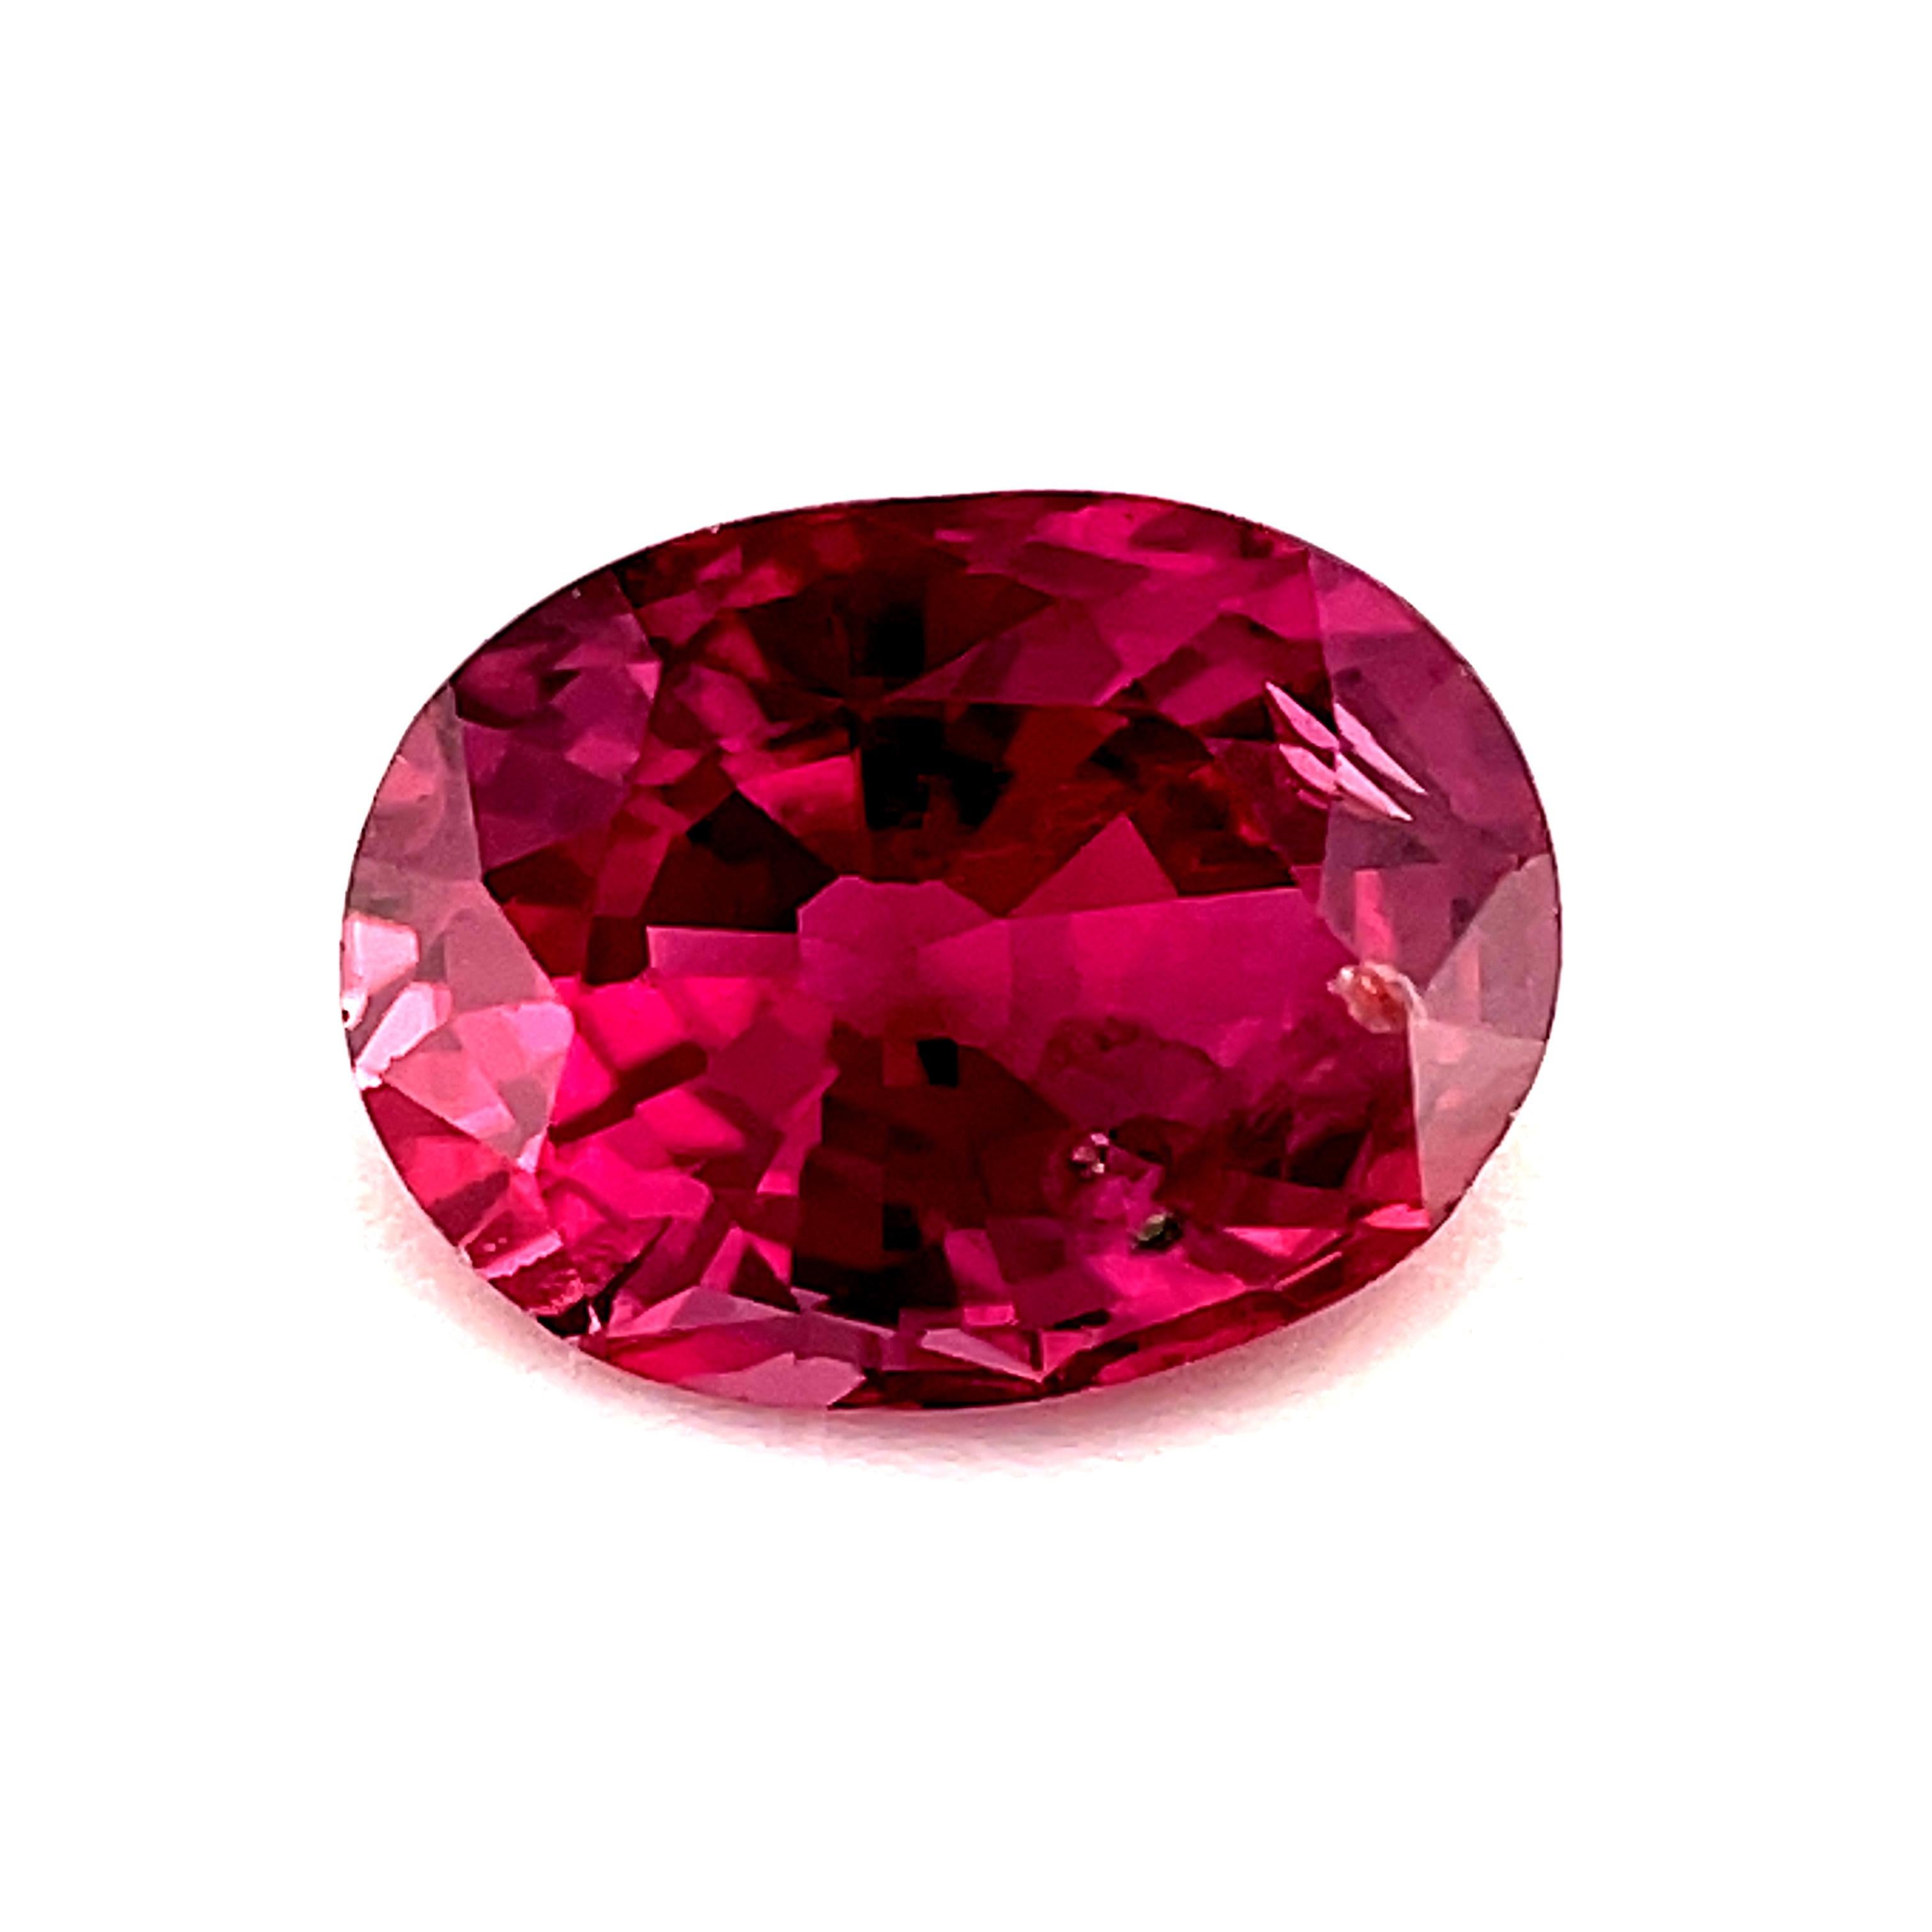 Si vous recherchez un saphir fantaisie rose vif avec des reflets framboise étincelants, c'est votre bijou ! Pesant 0,96 carats, elle est juste à côté d'un carat complet, a une couleur magnifique et est une pierre précieuse si brillante ! Ce saphir